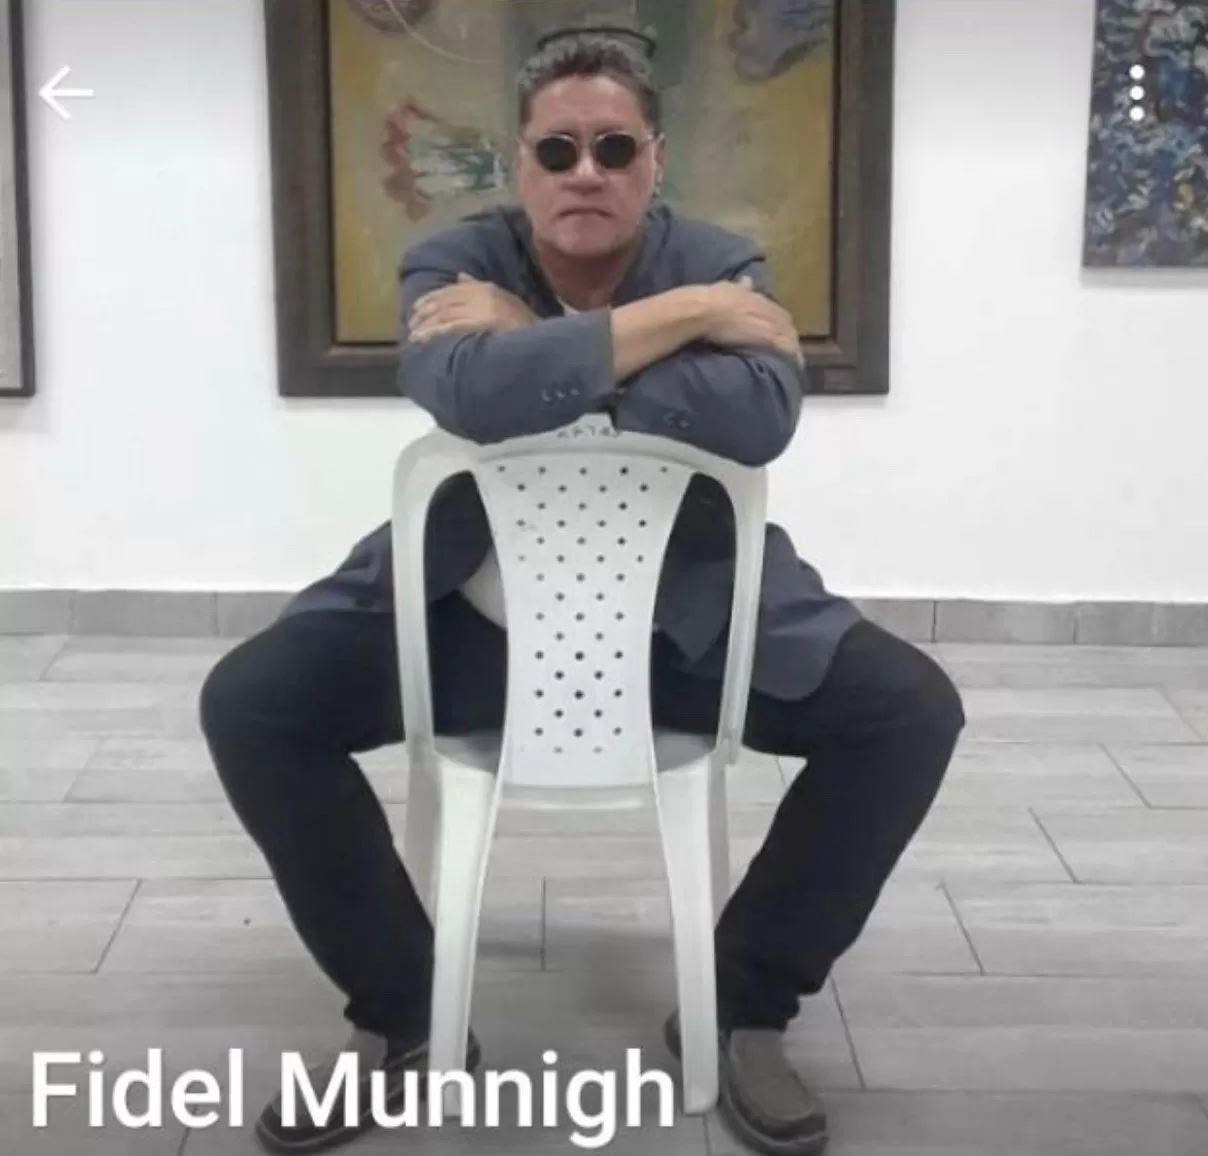 Diálogo filosófico entre Fidel Munnigh y Andrés Merejo (1-4)